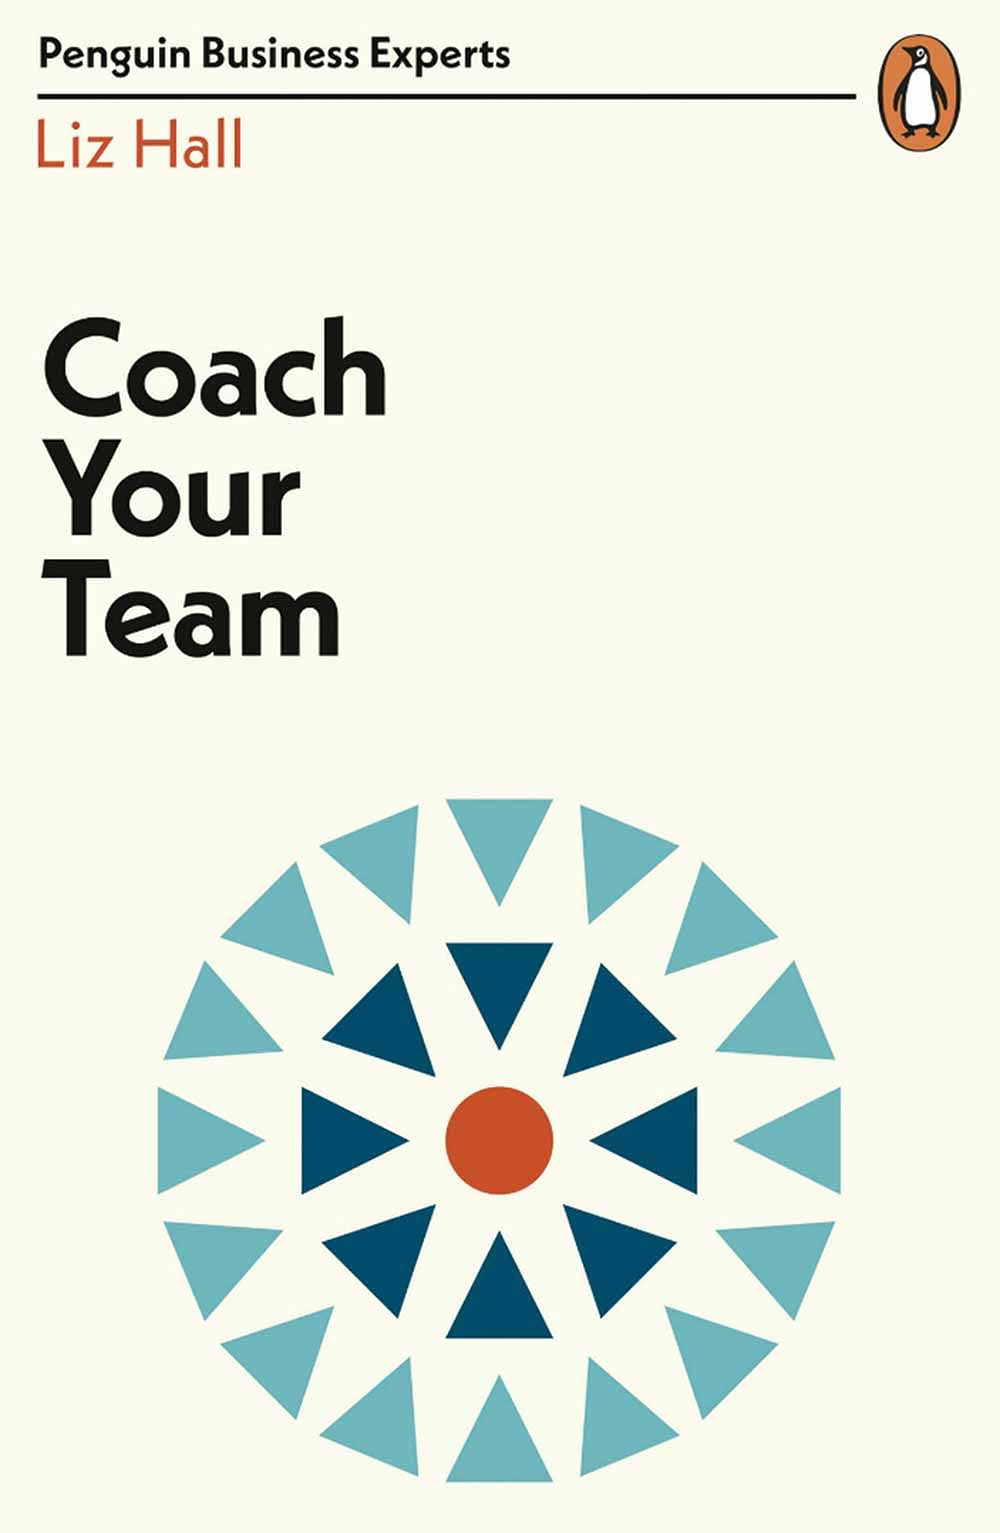 புத்தகத்தின் பெயர்: Coach Your Team
ஆசிரியர்: Liz Hall
பதிப்பகம்:‎  ‎Penguin